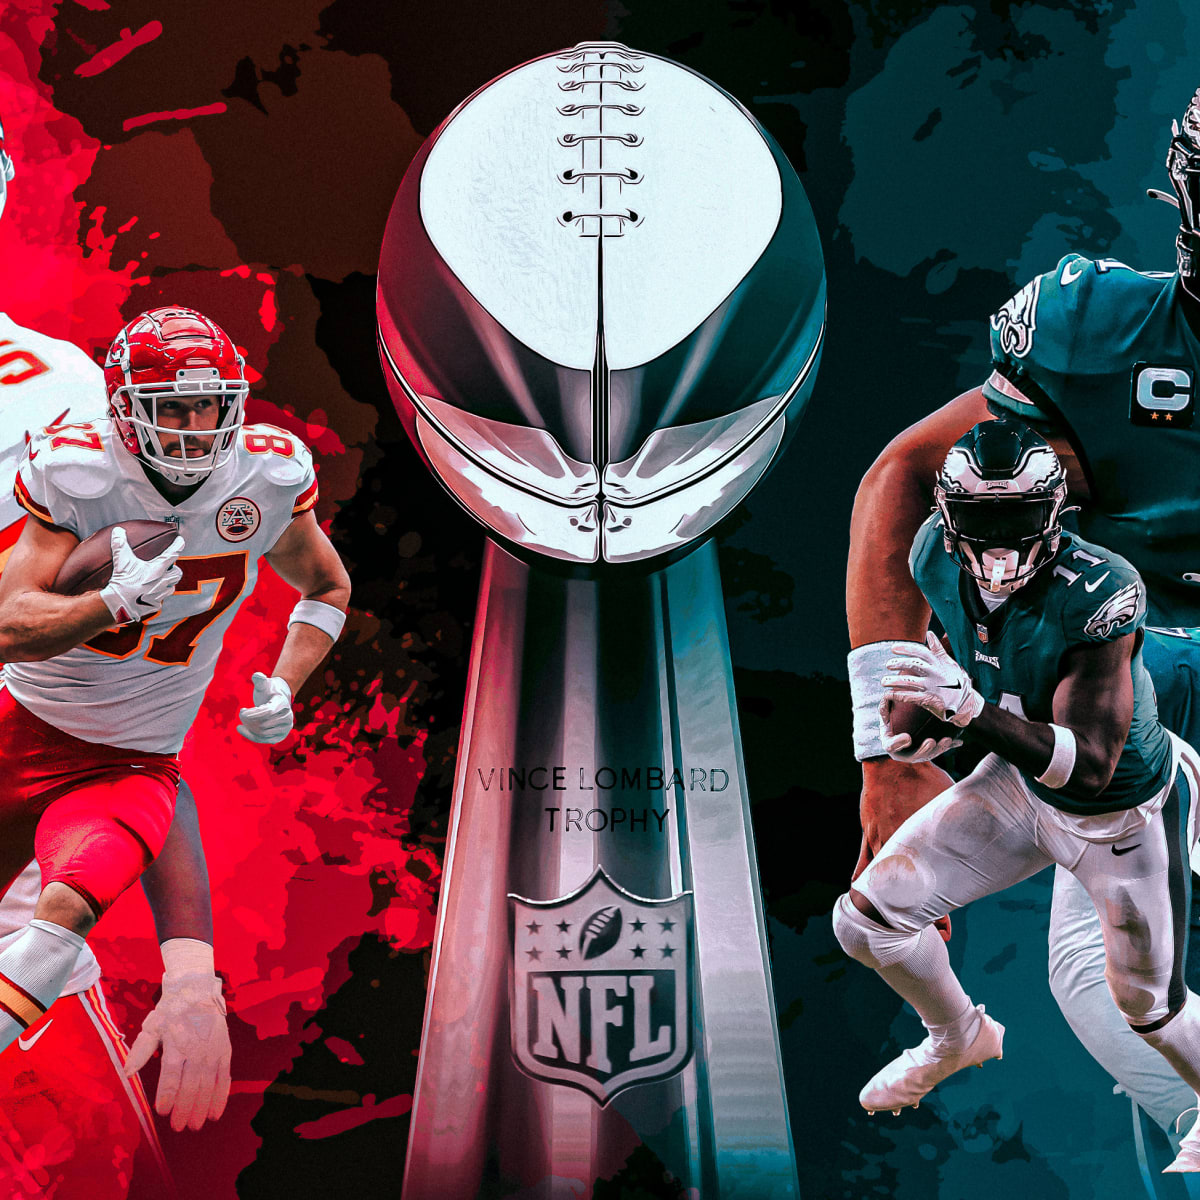 LIVE UPDATES: Super Bowl LVII, Eagles vs. Chiefs